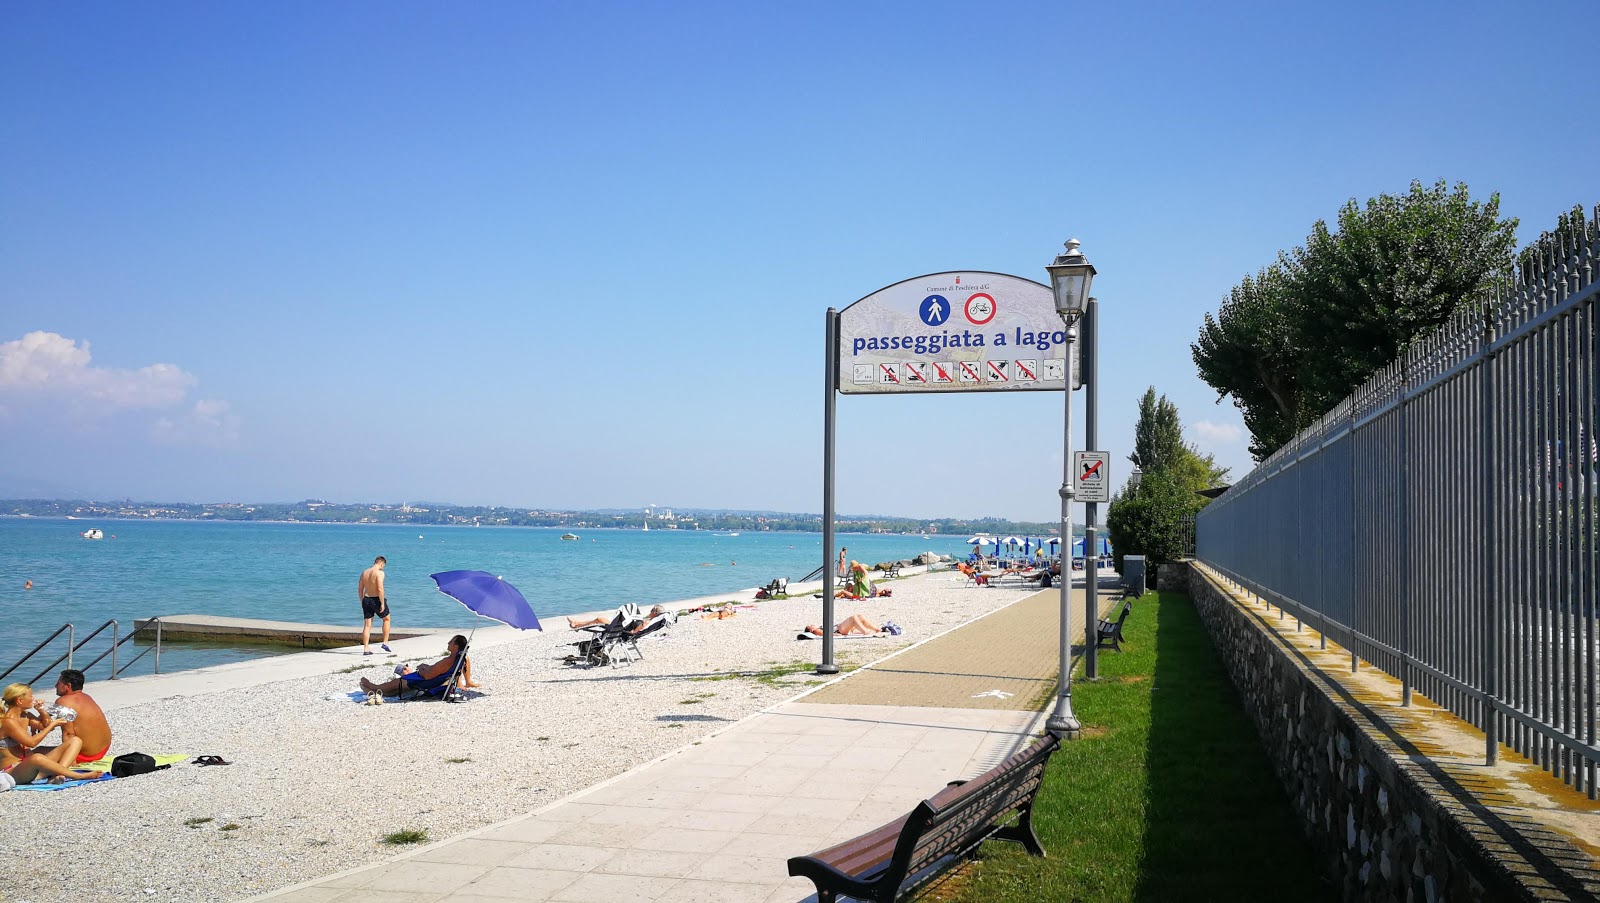 Foto de Spiaggia Peschiera con muy limpio nivel de limpieza